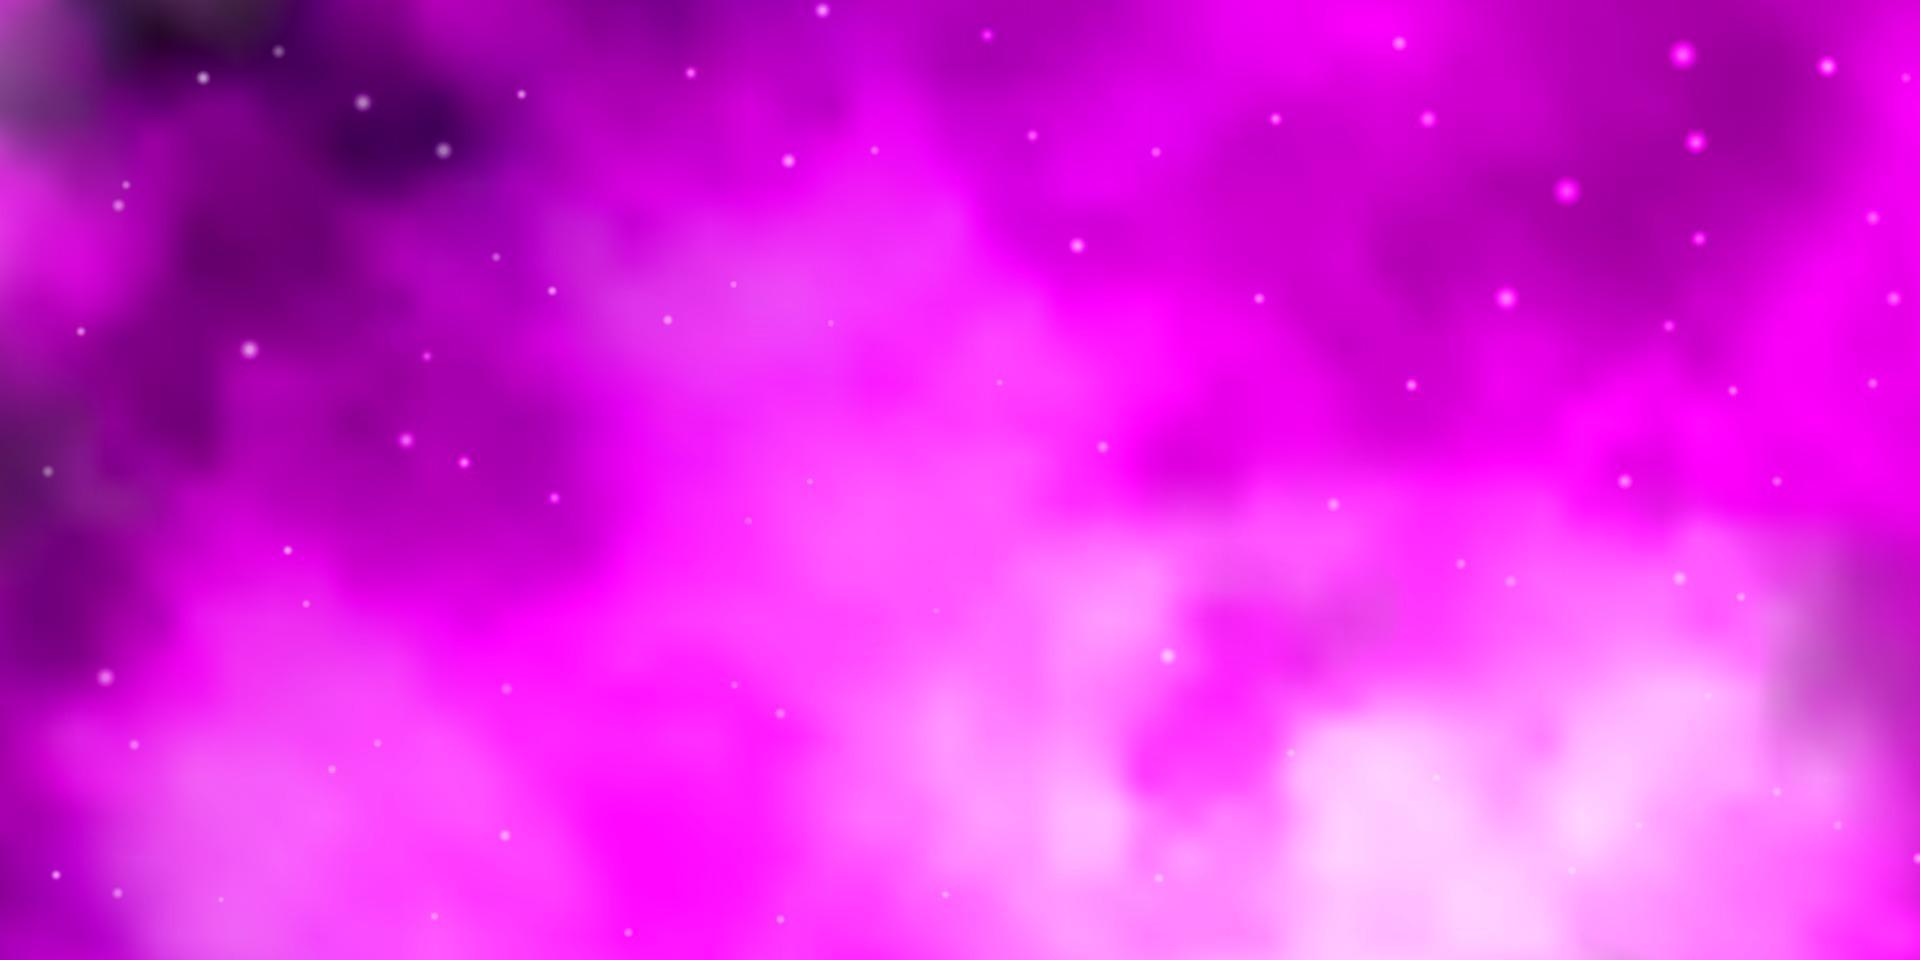 textura de vector de color rosa claro con hermosas estrellas.